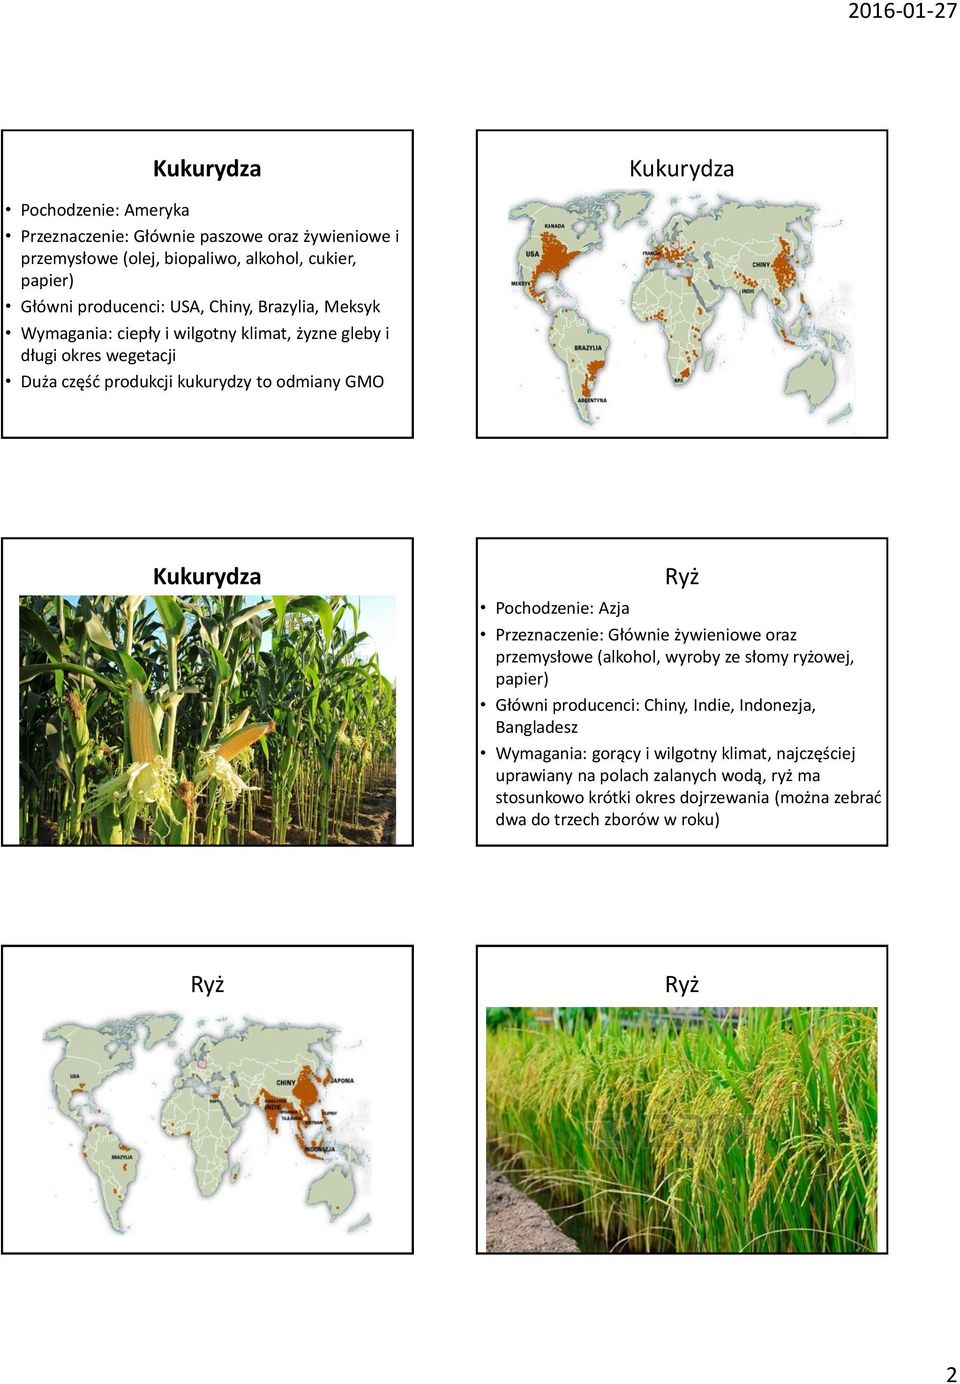 Pochodzenie: Azja Przeznaczenie: Głównie żywieniowe oraz przemysłowe (alkohol, wyroby ze słomy ryżowej, papier) Główni producenci: Chiny, Indie, Indonezja, Bangladesz